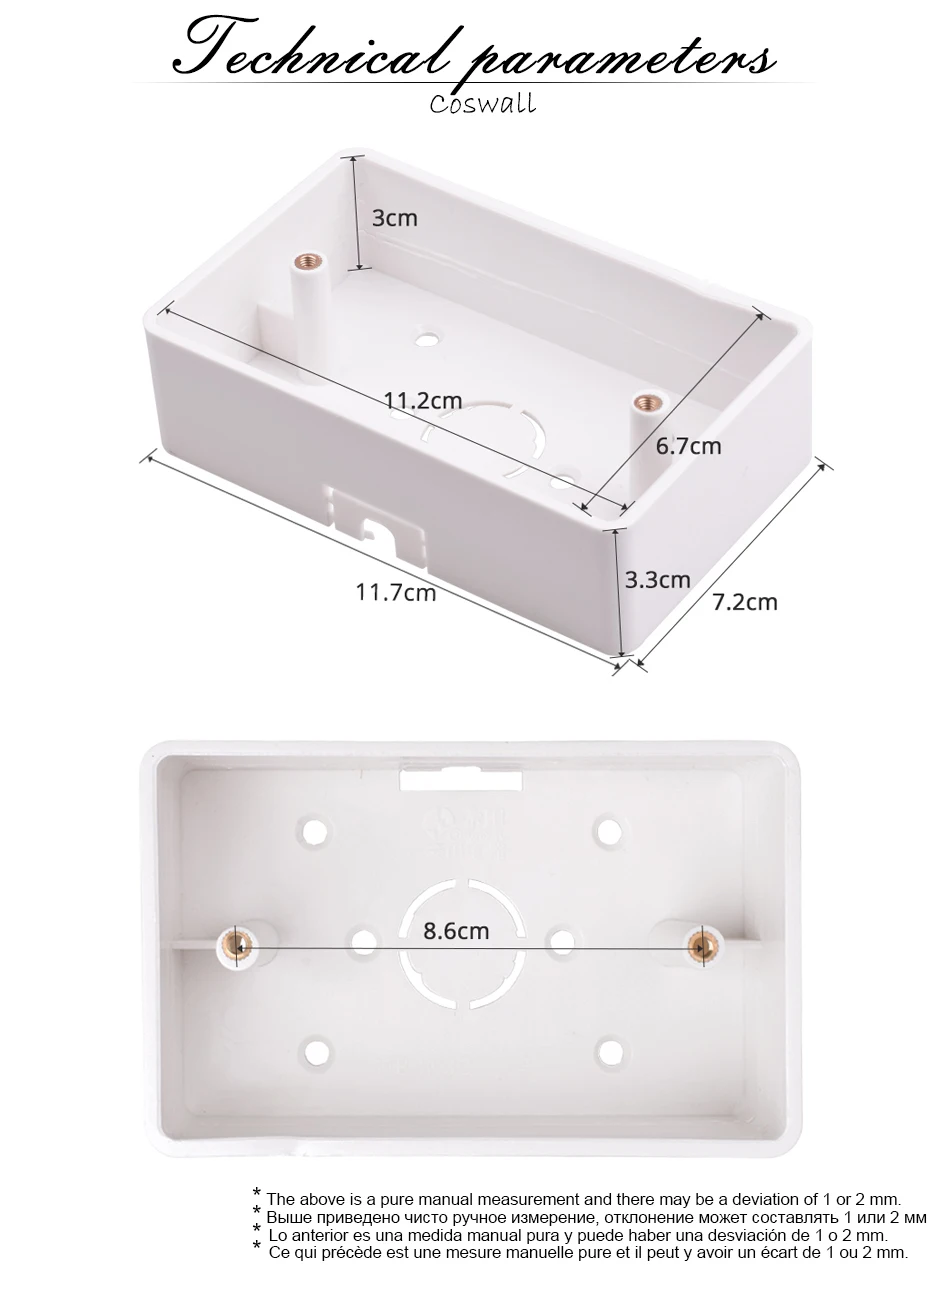 Coswall внешняя Монтажная коробка 117 мм* 72 мм* 33 мм для 118*72 мм стандартный переключатель и розетка применяются для любого положения поверхности стены